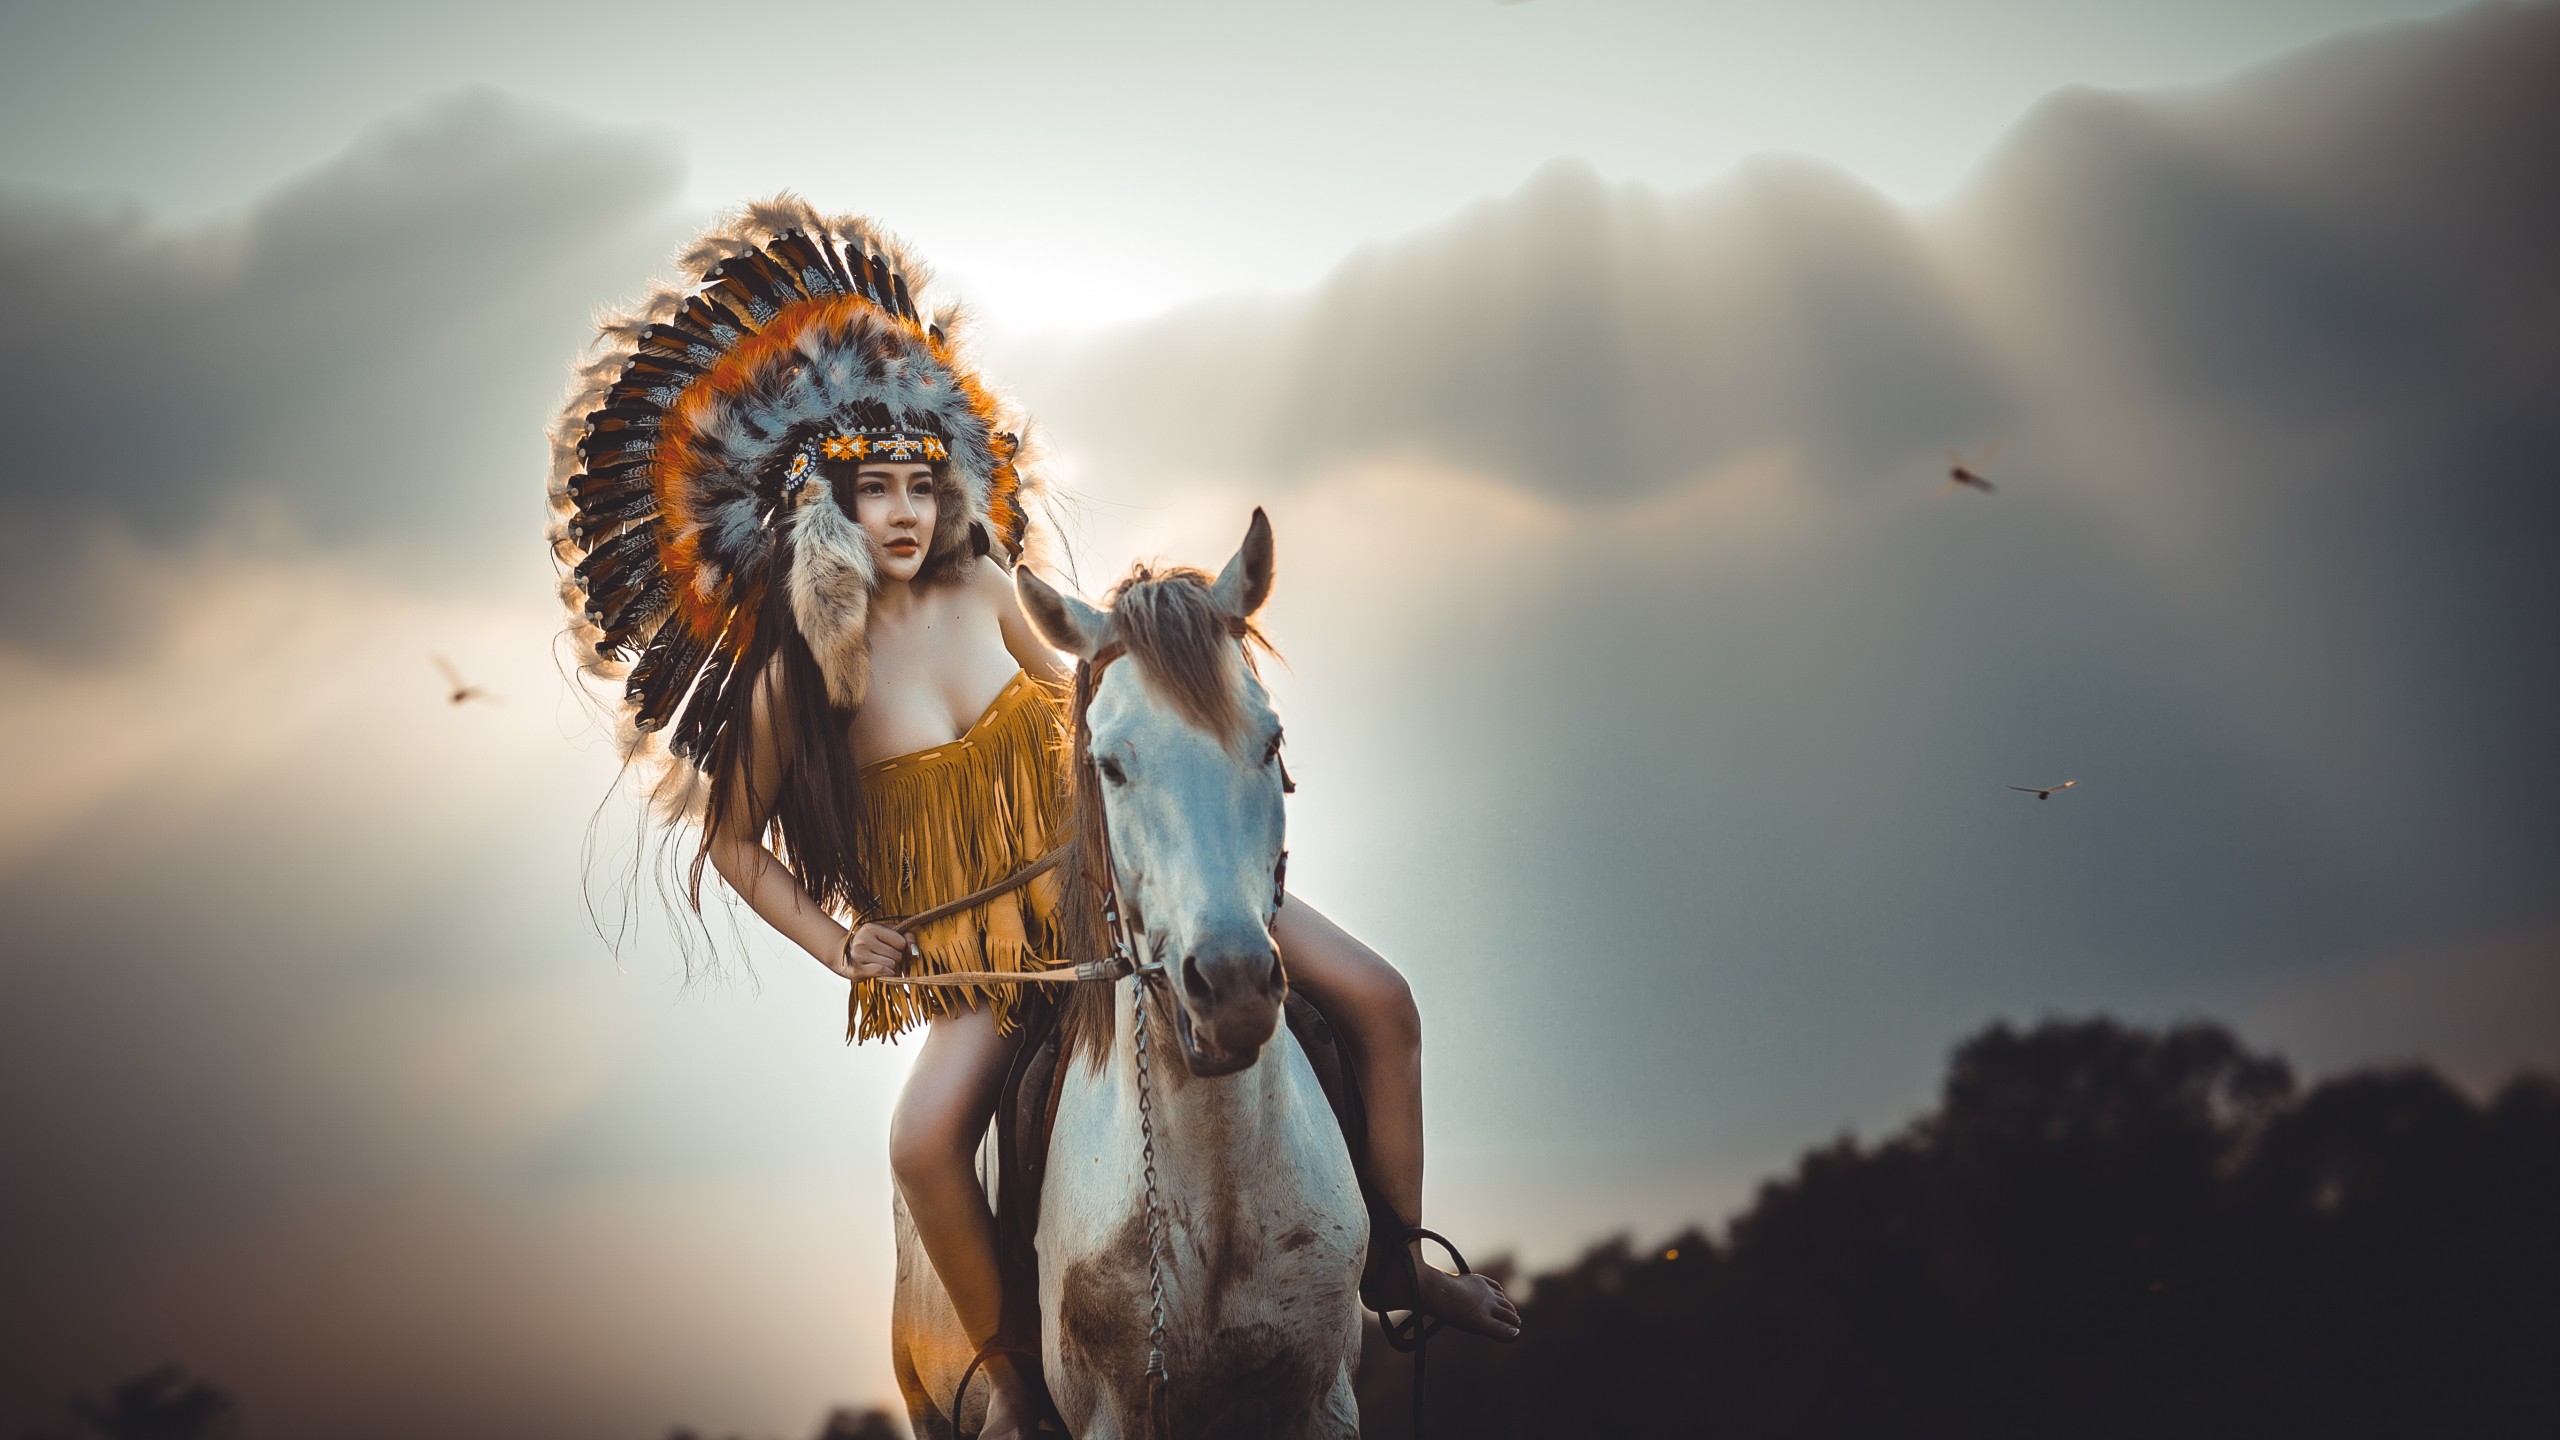 아메리카 원주민의 hd 벽지,하늘,신화학,사진술,장난,cg 삽화